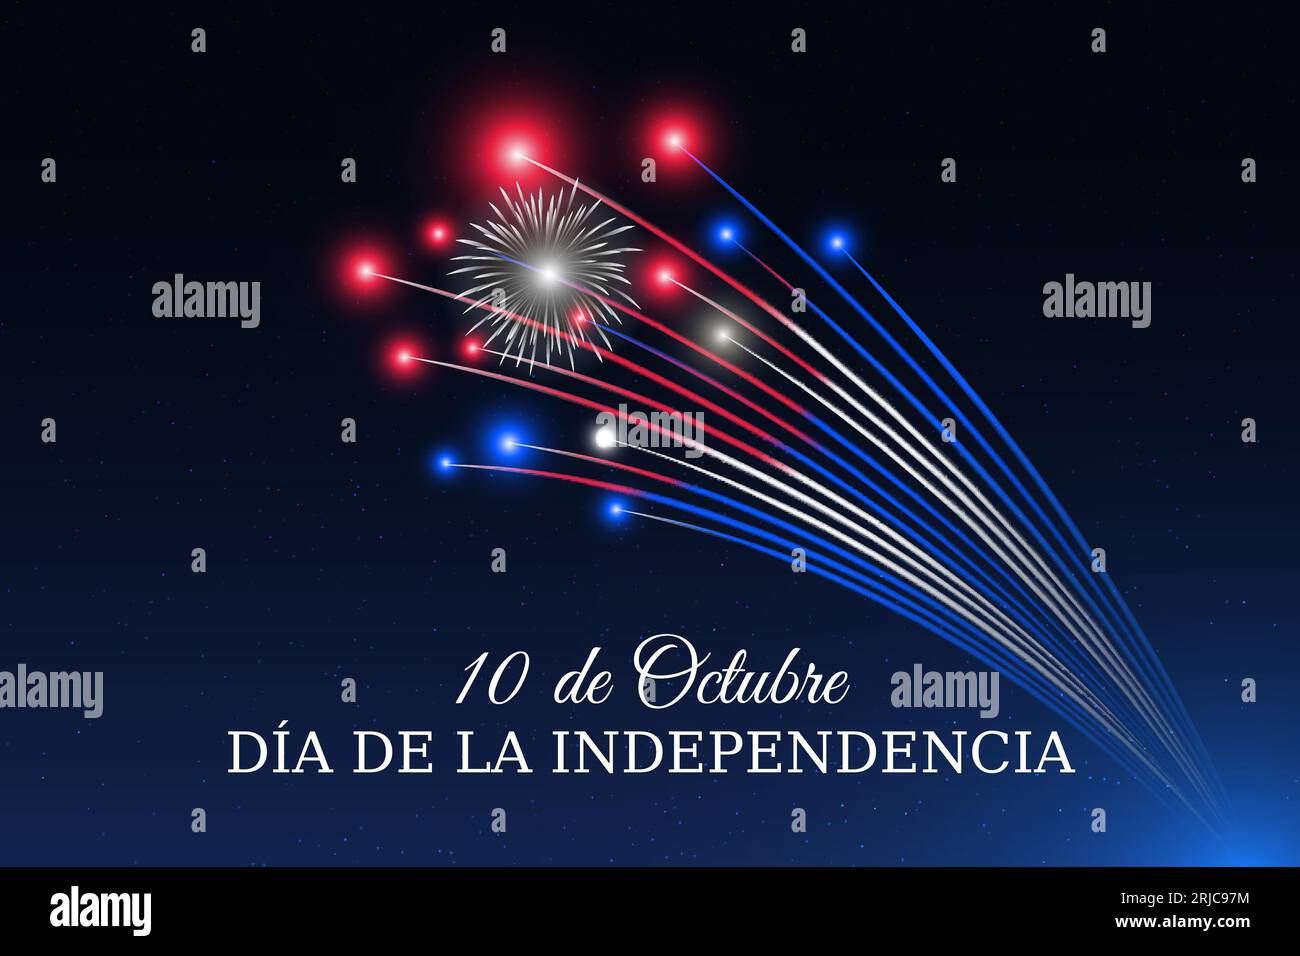 10 de octubre, día de la independencia de cuba, fuegos artificiales de la bandera cubana sobre fondo azul del cielo de la noche. Fiesta nacional de Cuba. Tarjeta de felicitación. Vector Ilustración del Vector